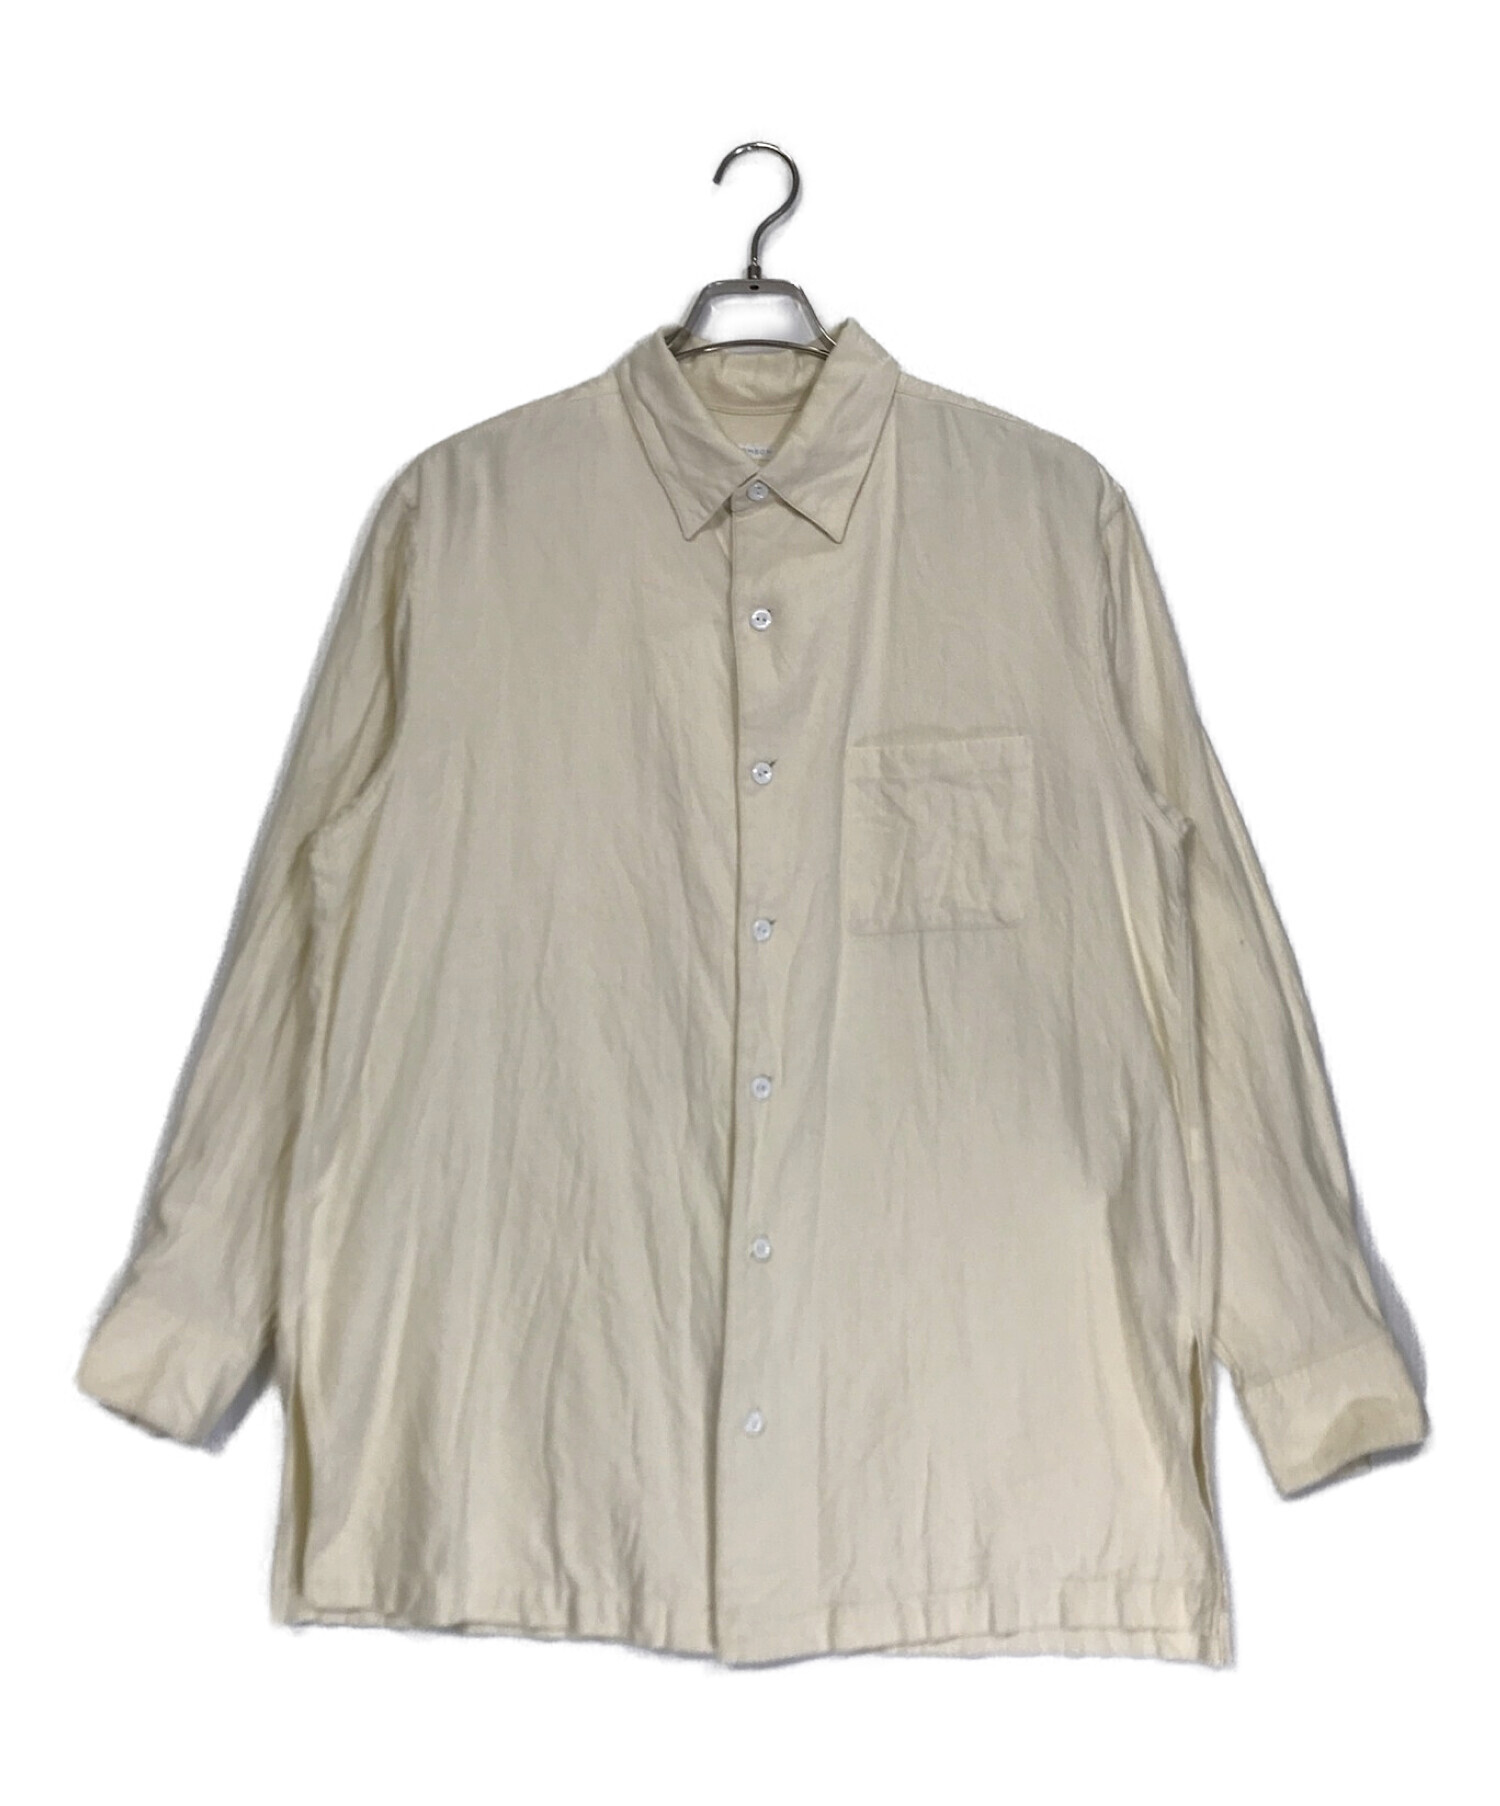 SOWBOW (ソウボウ) L/S コットンポケットシャツ アイボリー サイズ:2